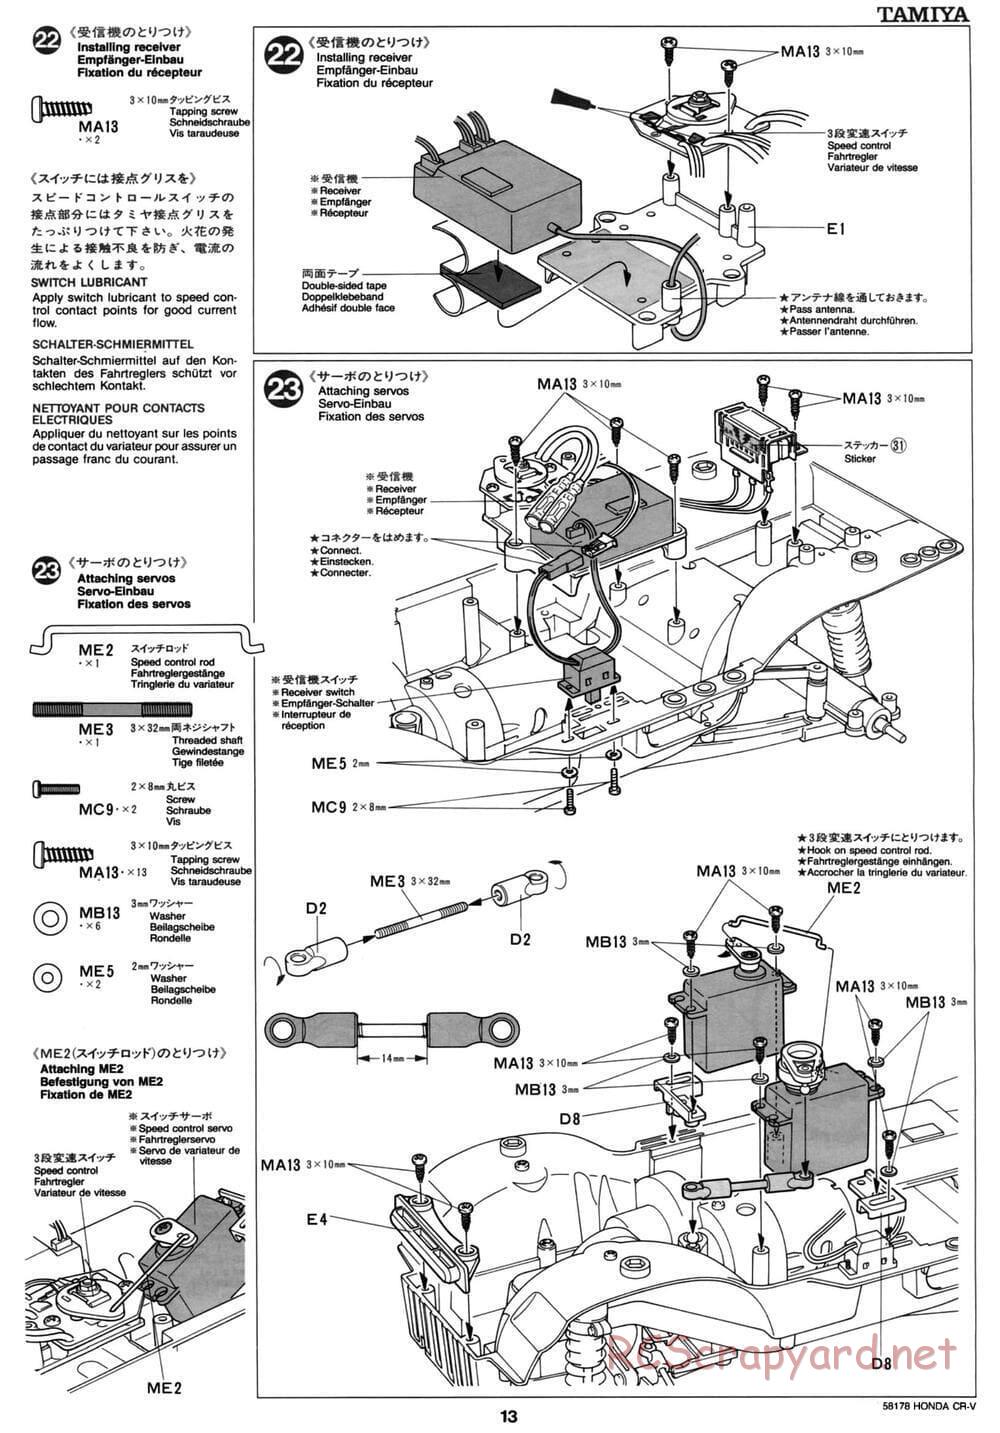 Tamiya - Honda CR-V - CC-01 Chassis - Manual - Page 13